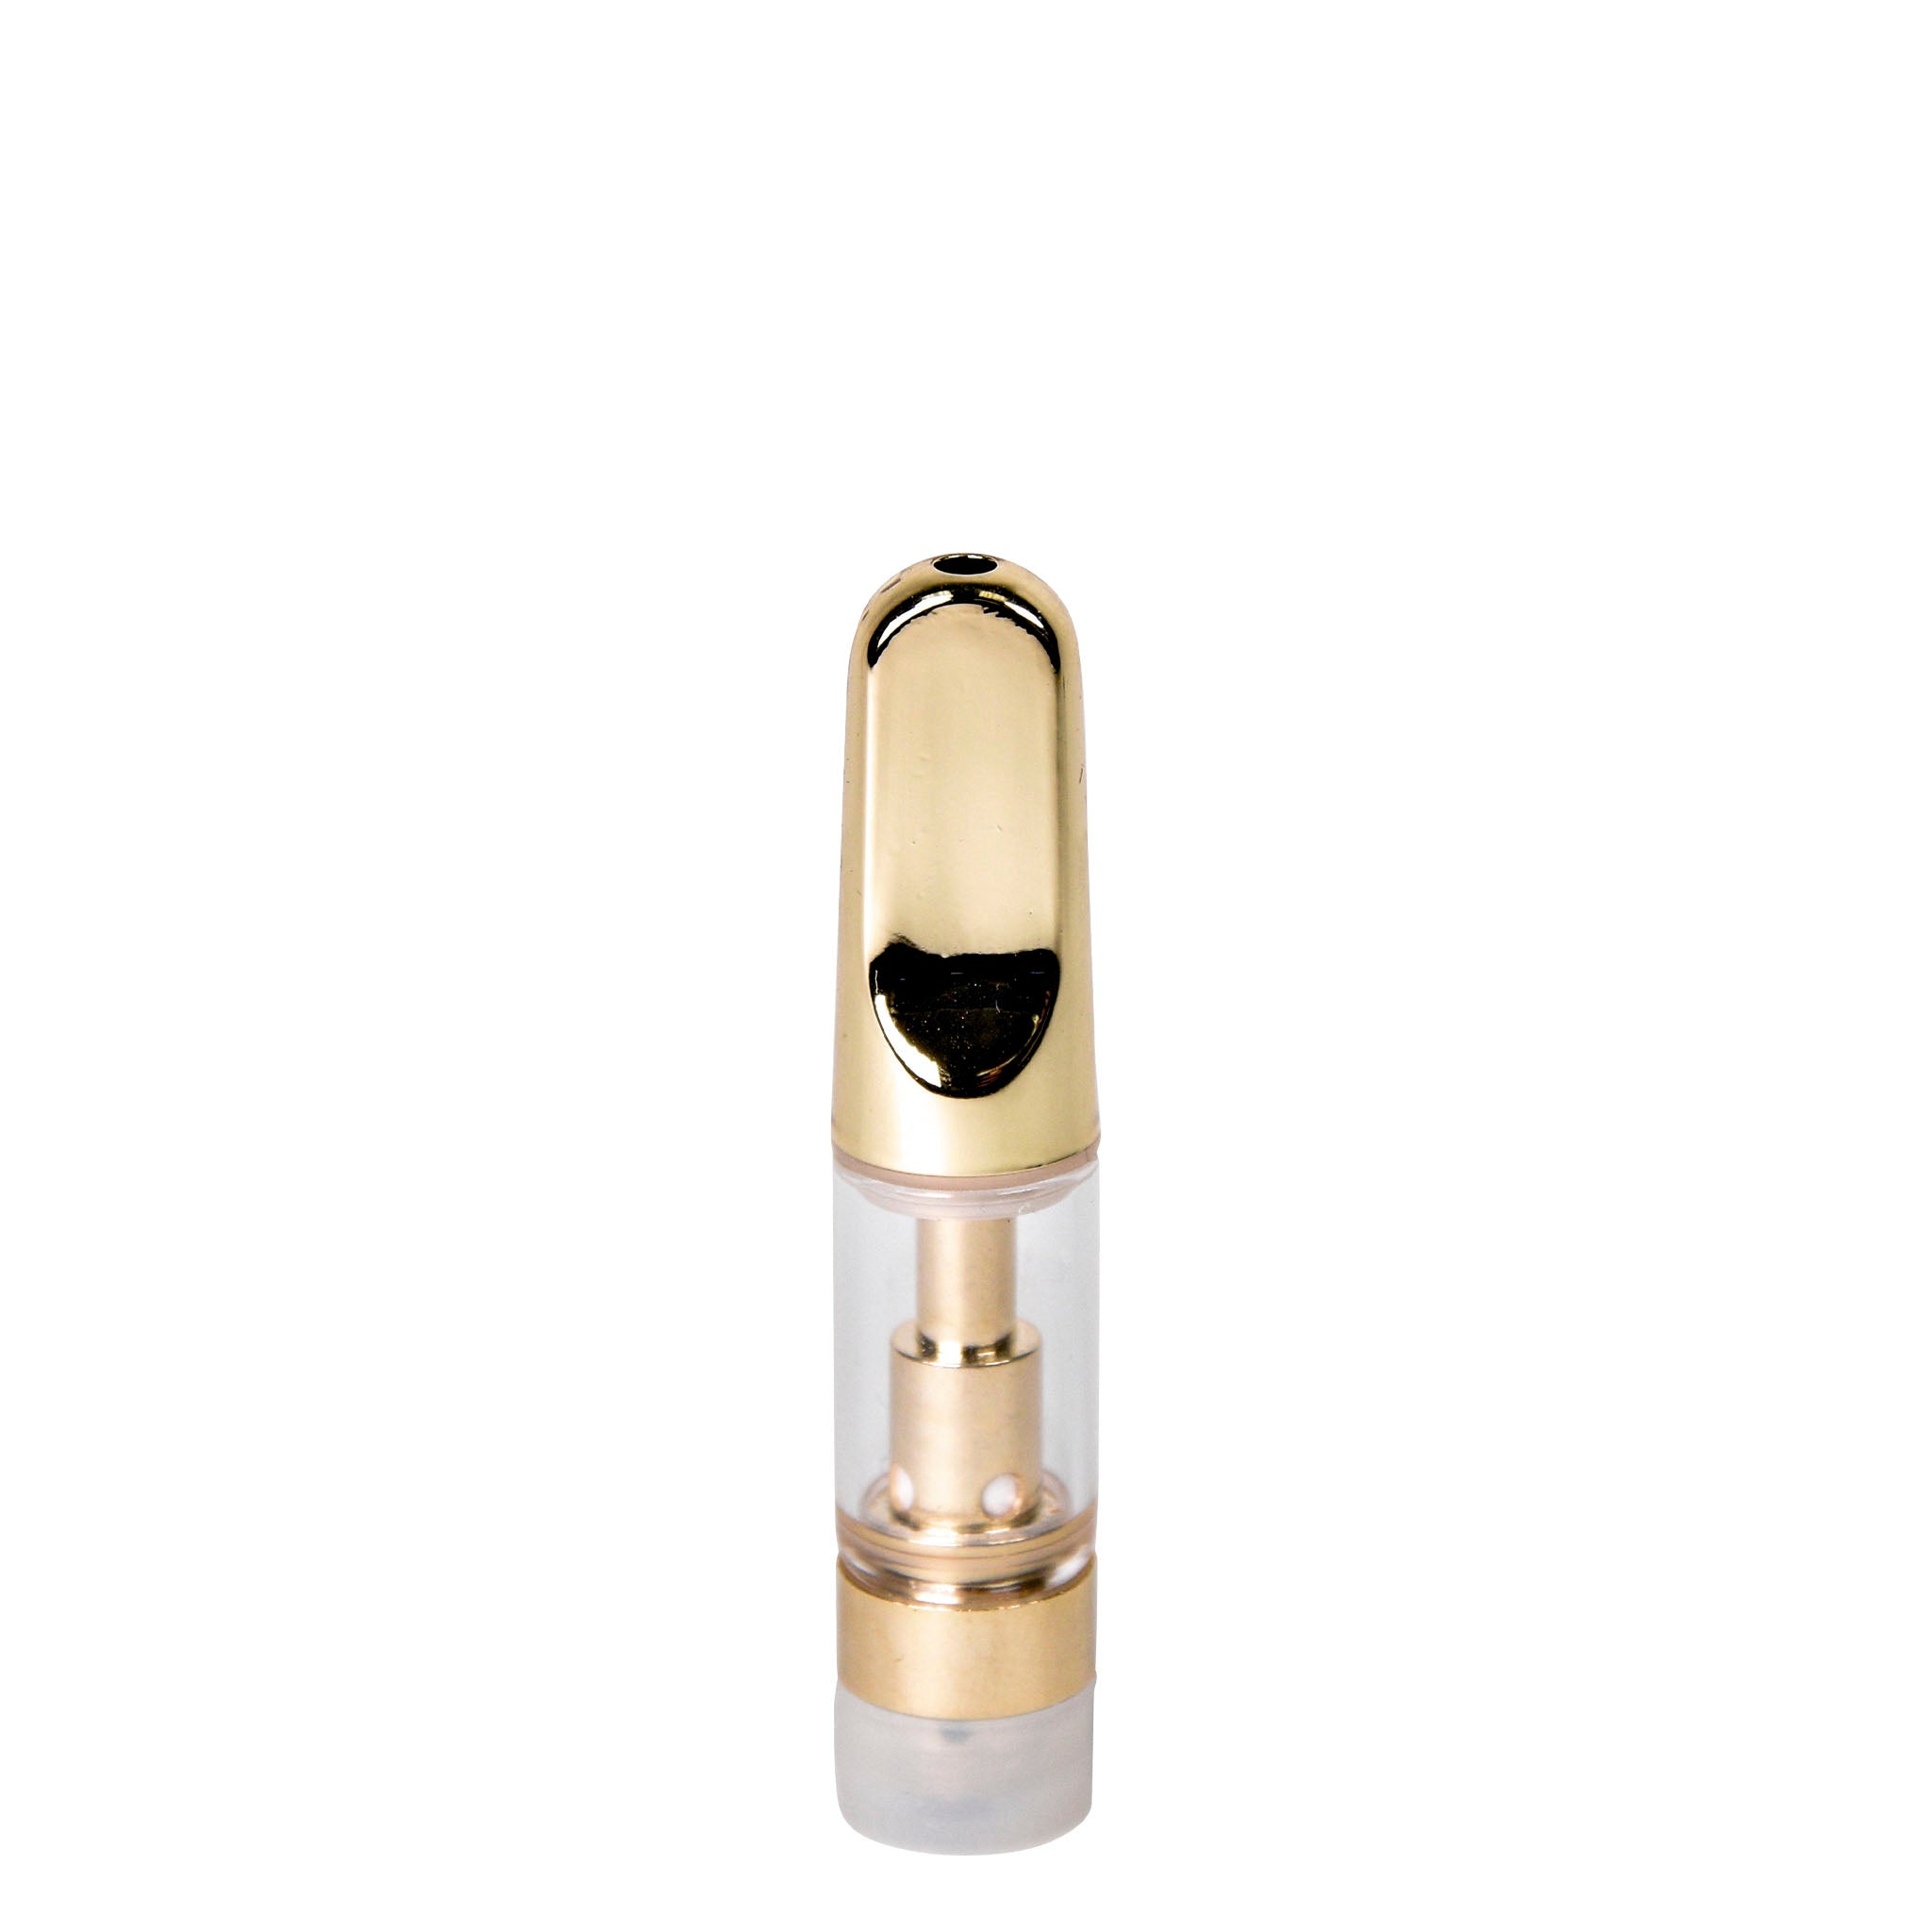 Empty 0.5mL 510 Gold Tip Vape Cartridge-Vape Cartridges-Vape Pens Wholesale